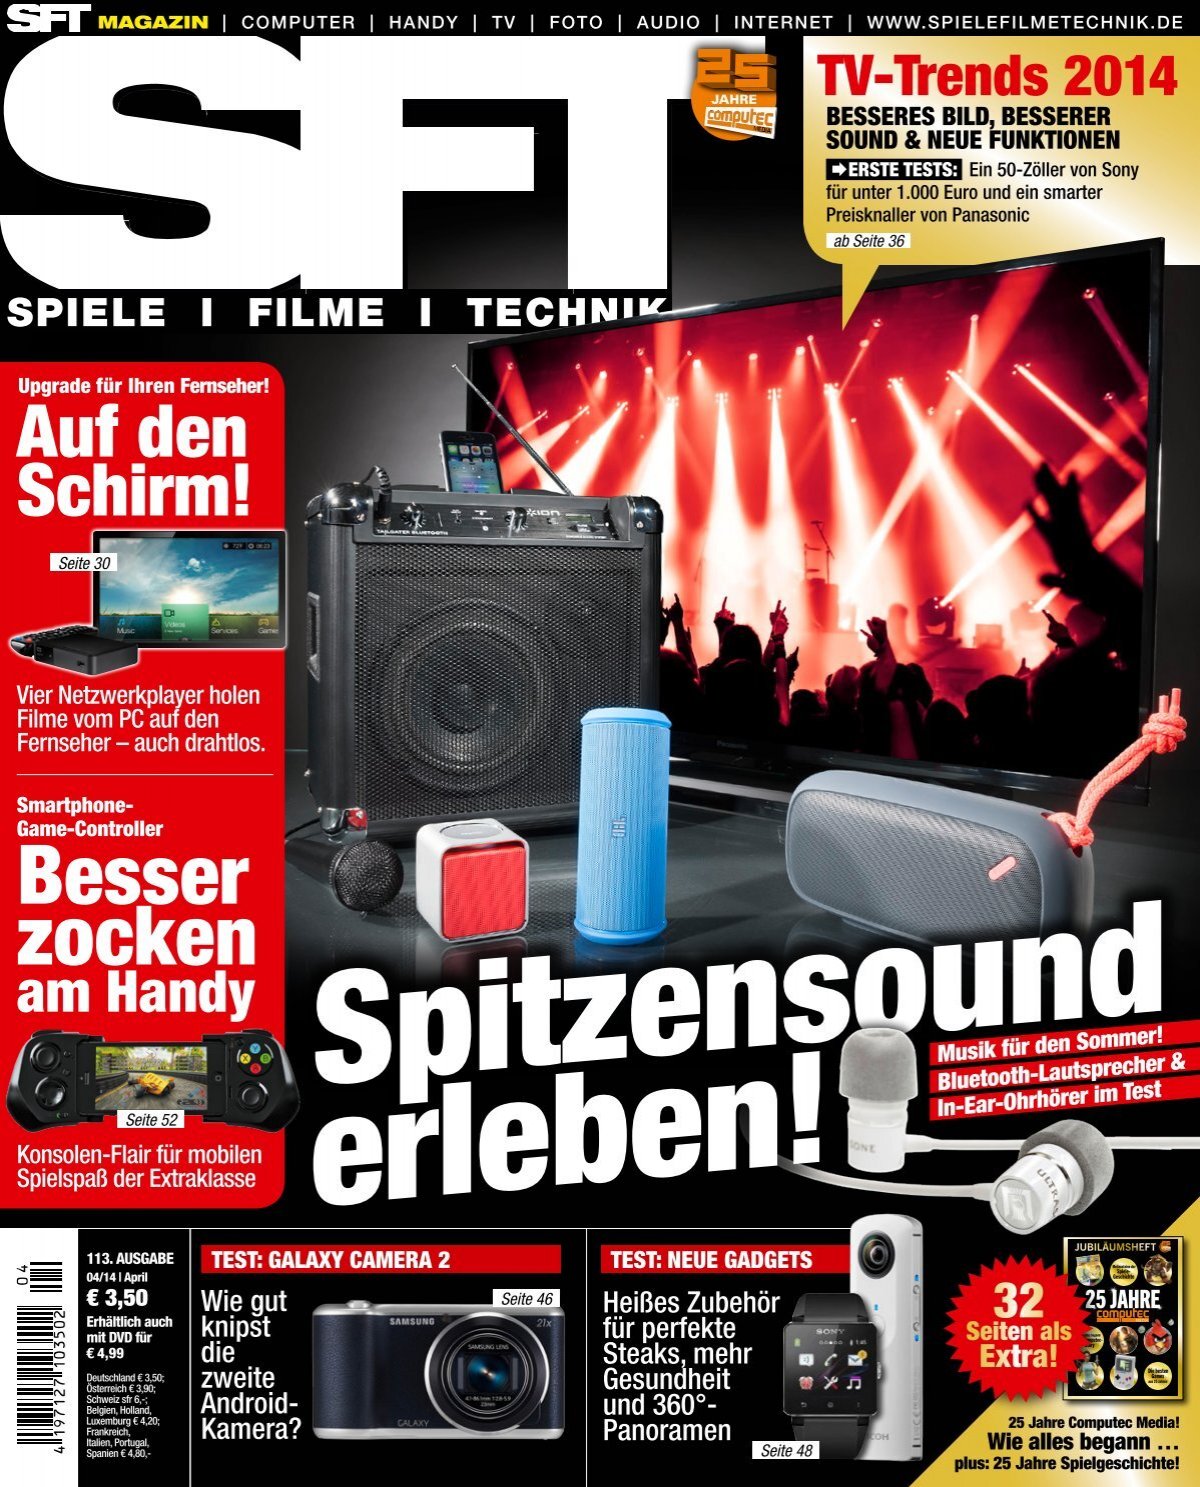 SFT – Spiele Filme Technik - Magazin Spitzensound erleben! (Vorschau)